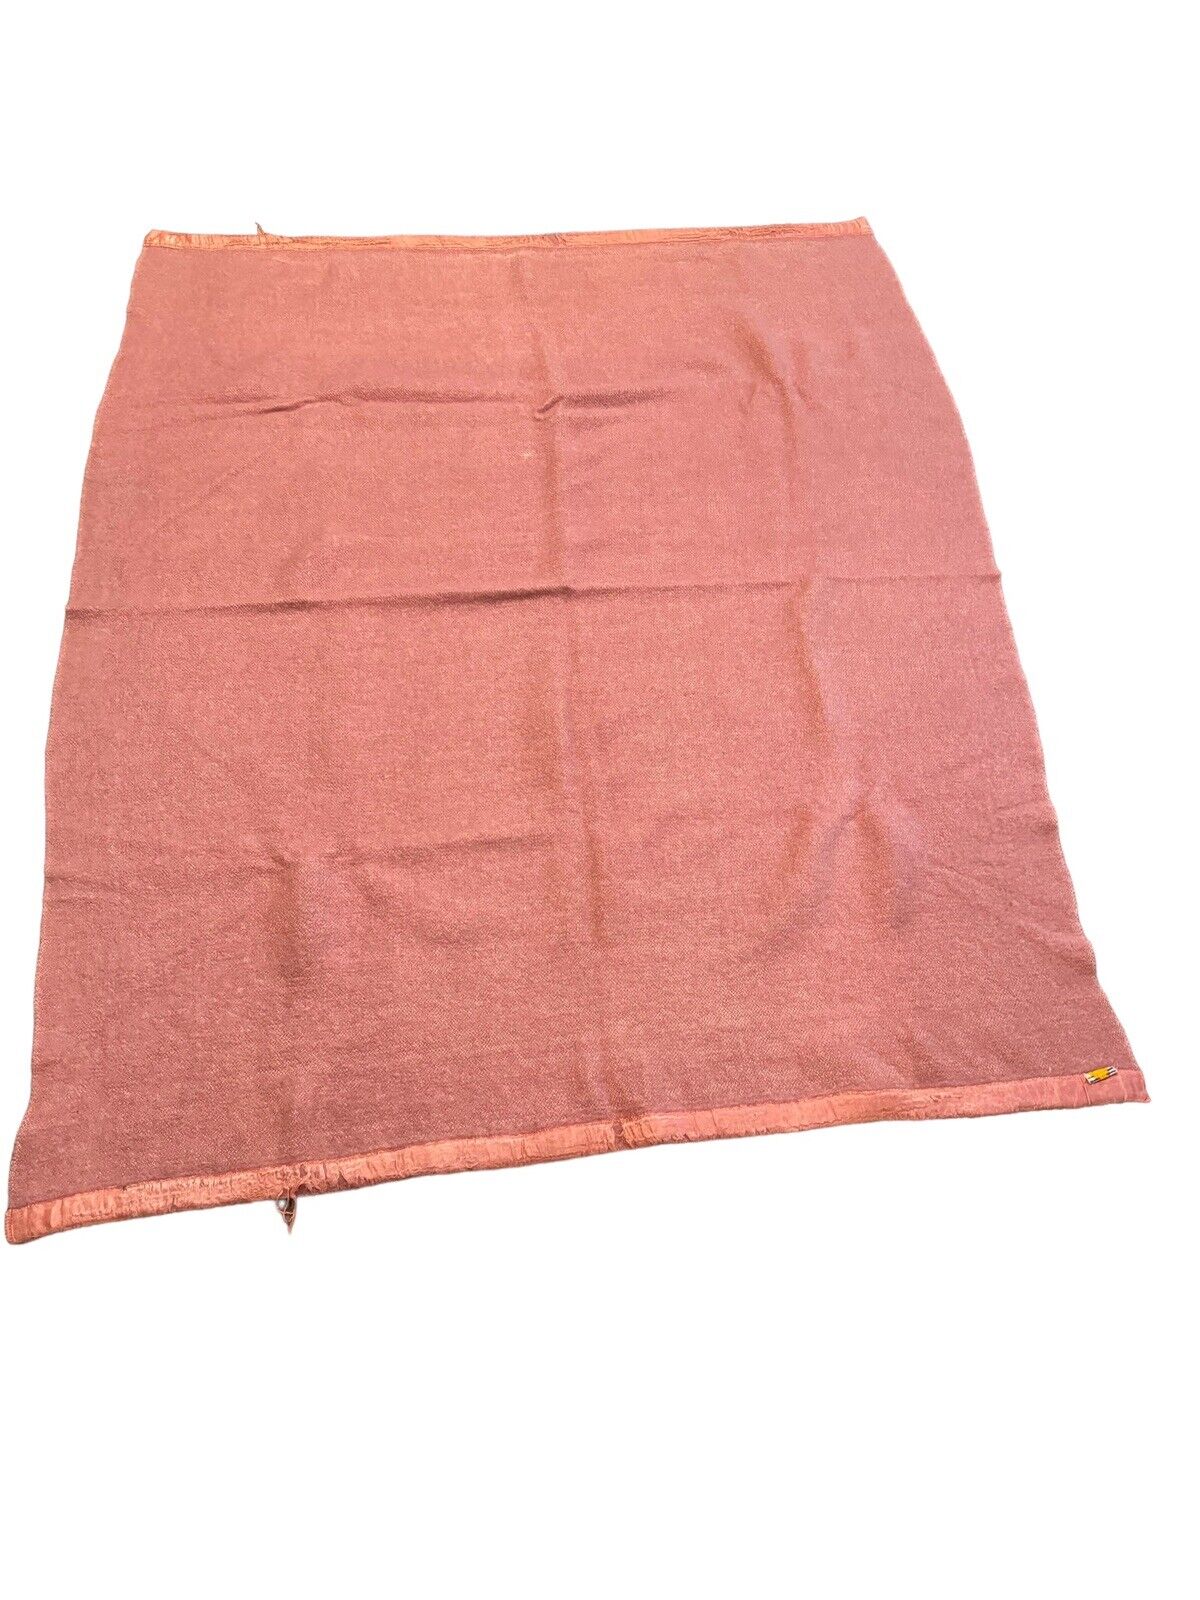 Vintage St.Marys Fine Blankets Wool Blanket 72x58 